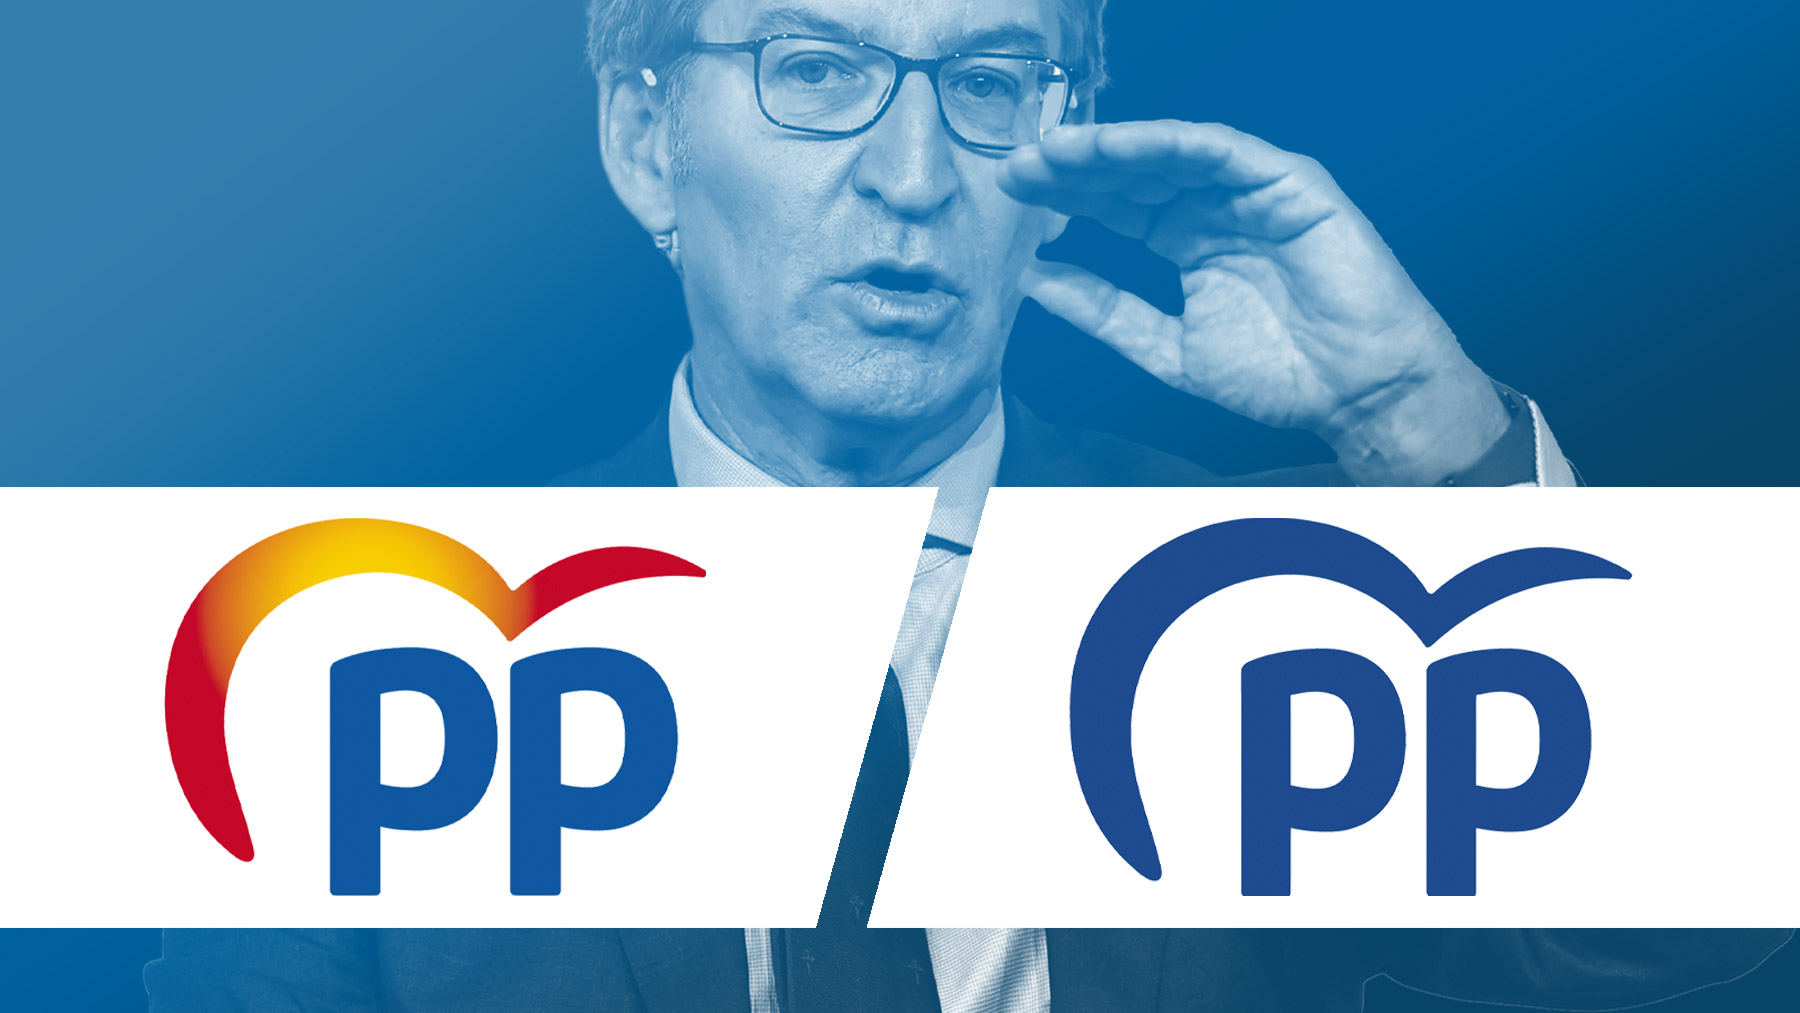 Evolución del logo del PP